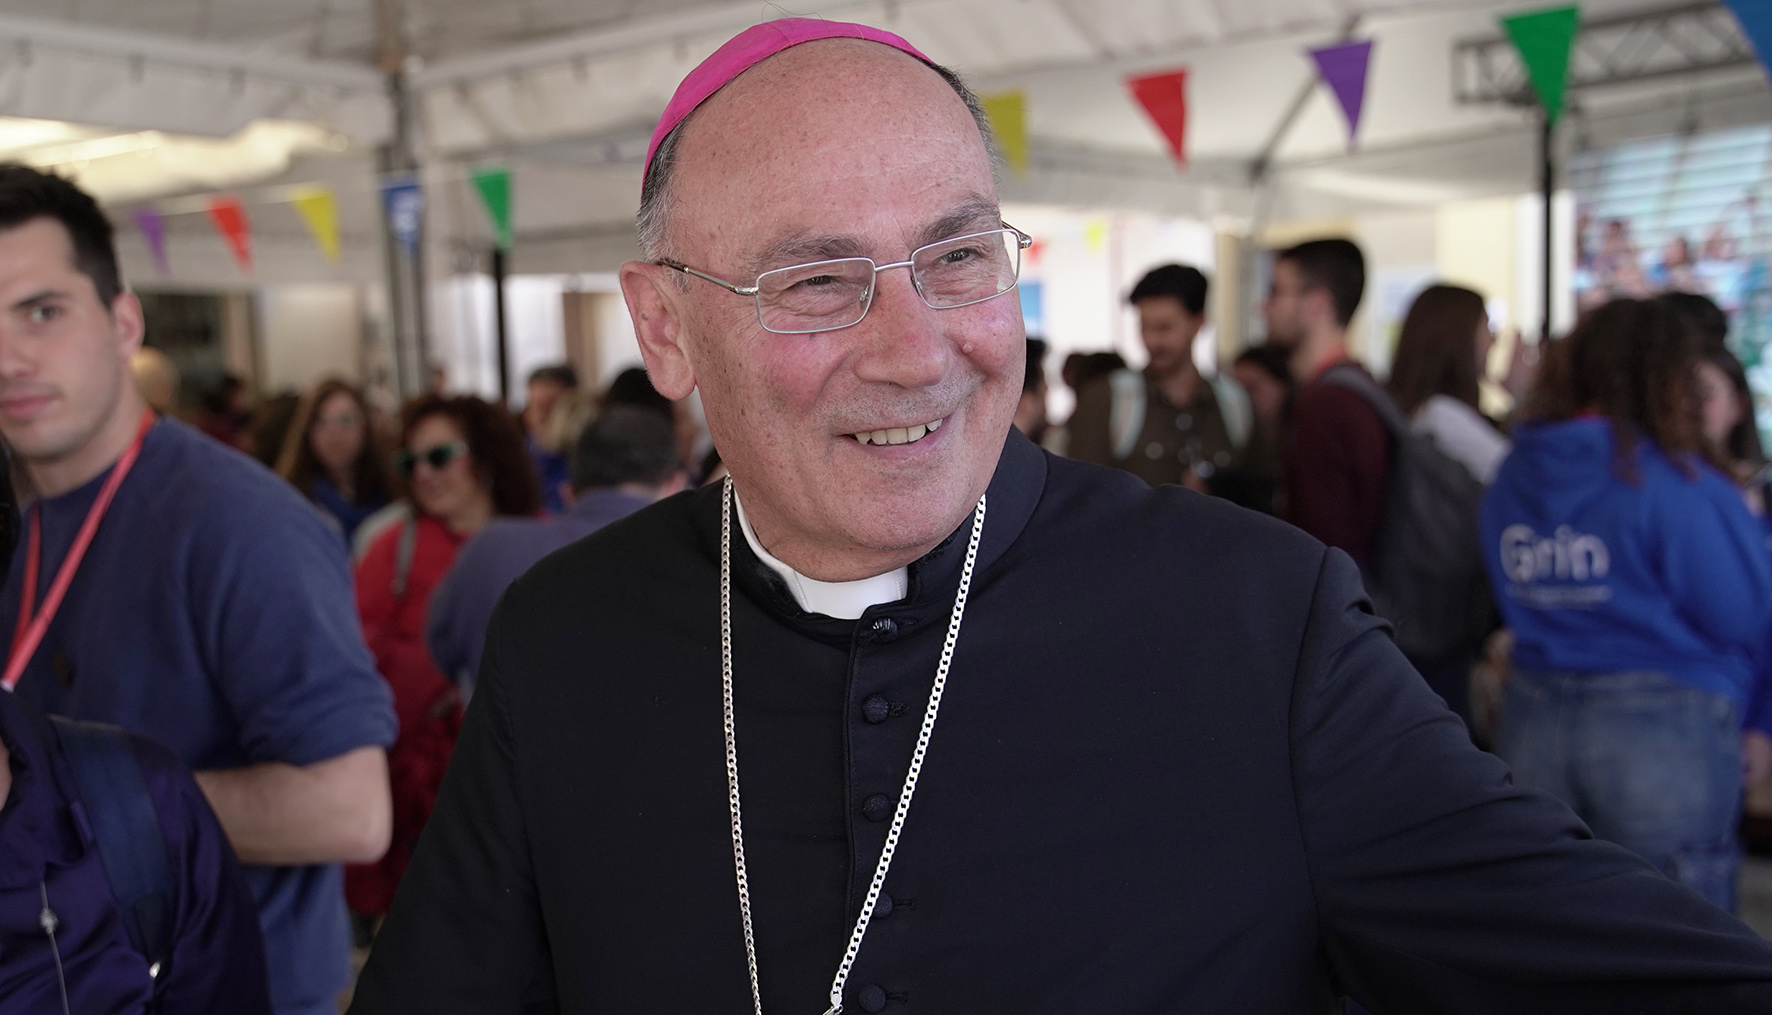 Mese della Madonna, il Vescovo di Mazara: “Riproporre gli ideali di famiglia e santità”